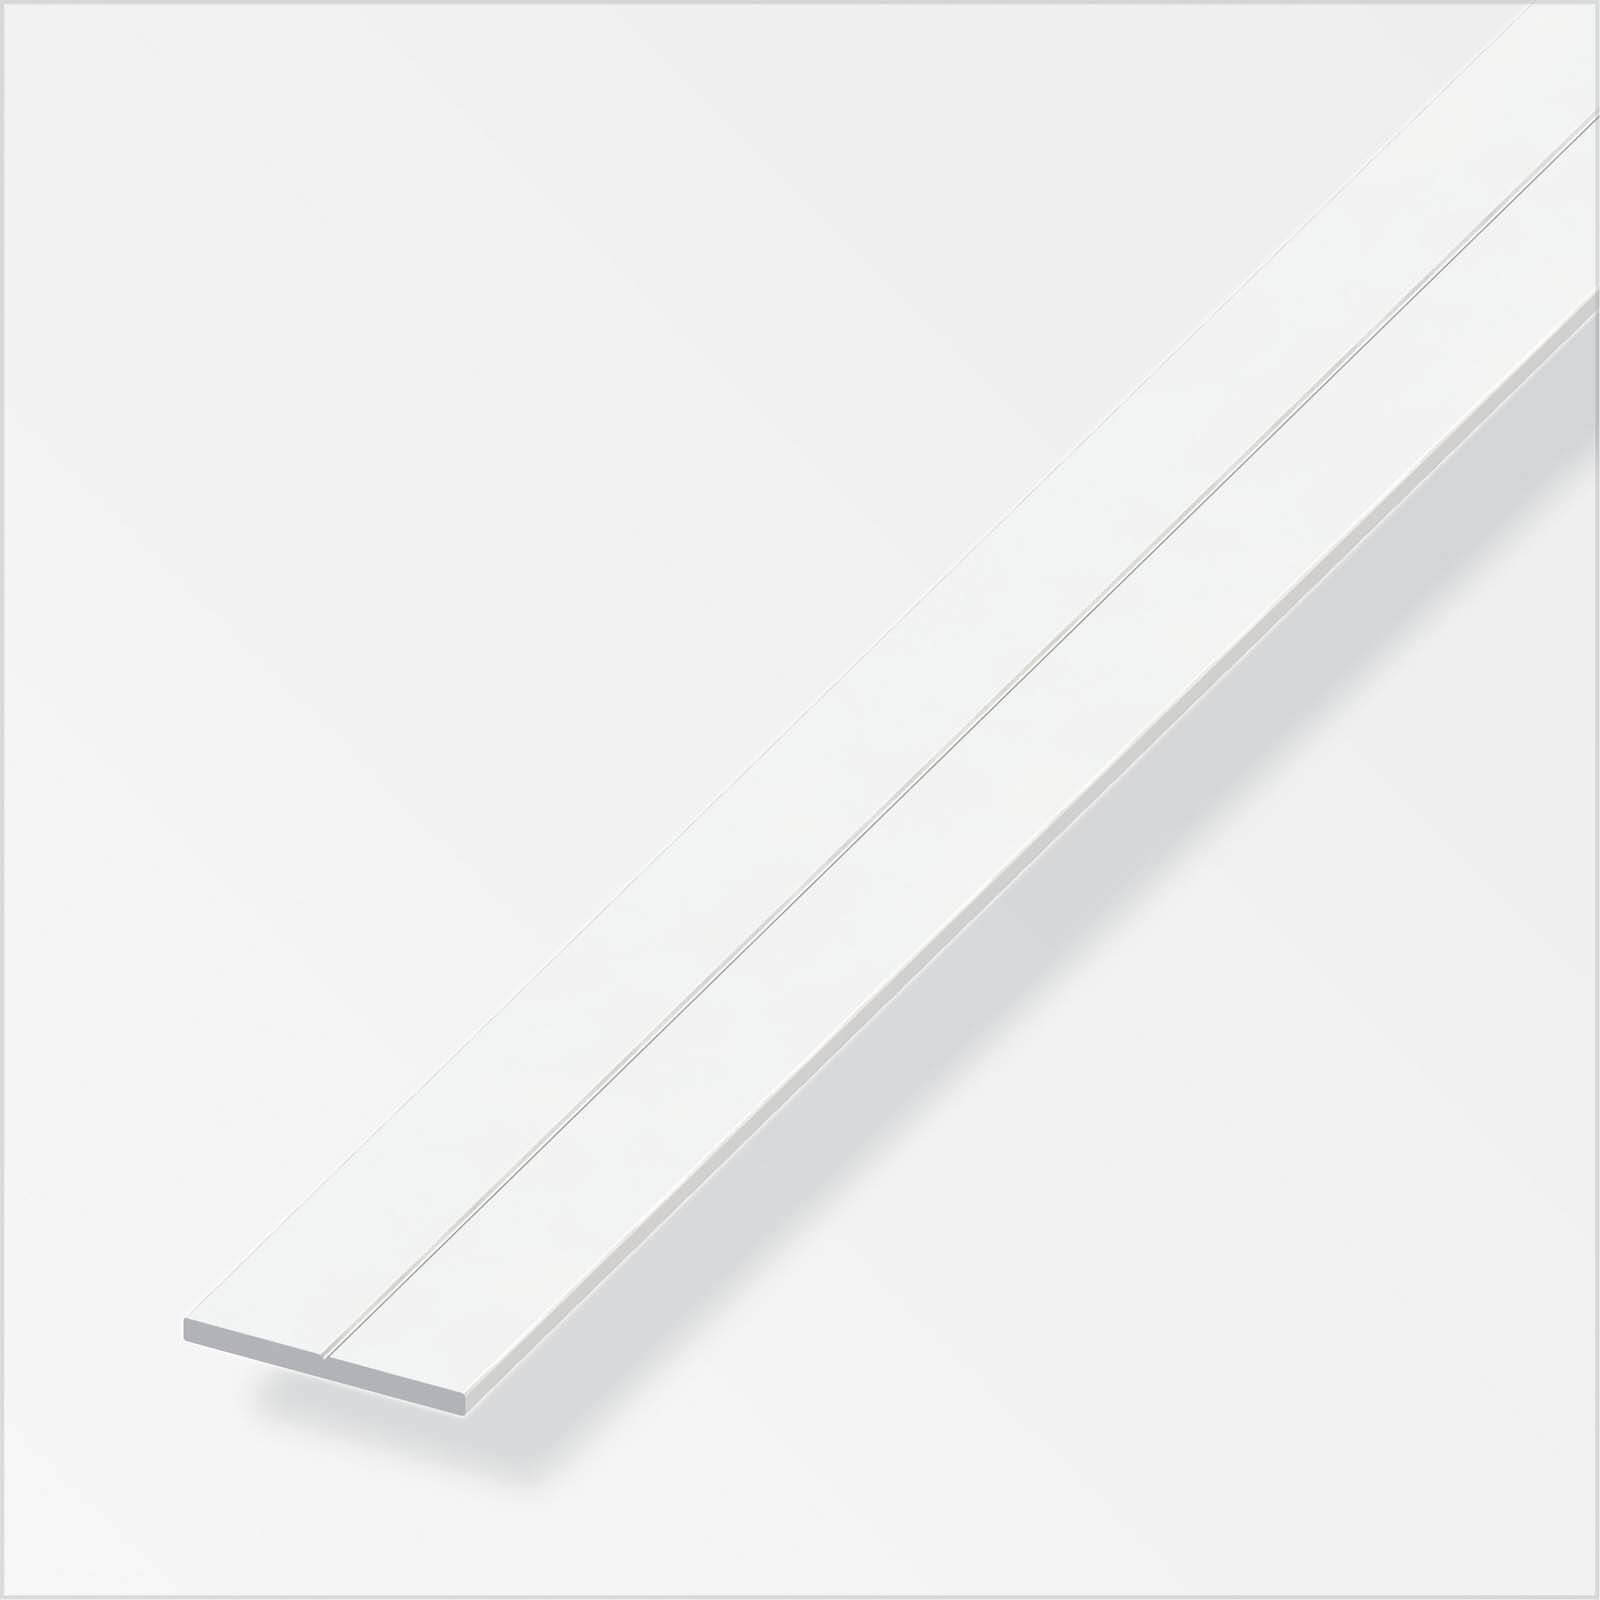 Photo of Rothley Equal Angle - Raw Aluminium - 11.5 X 2500mm